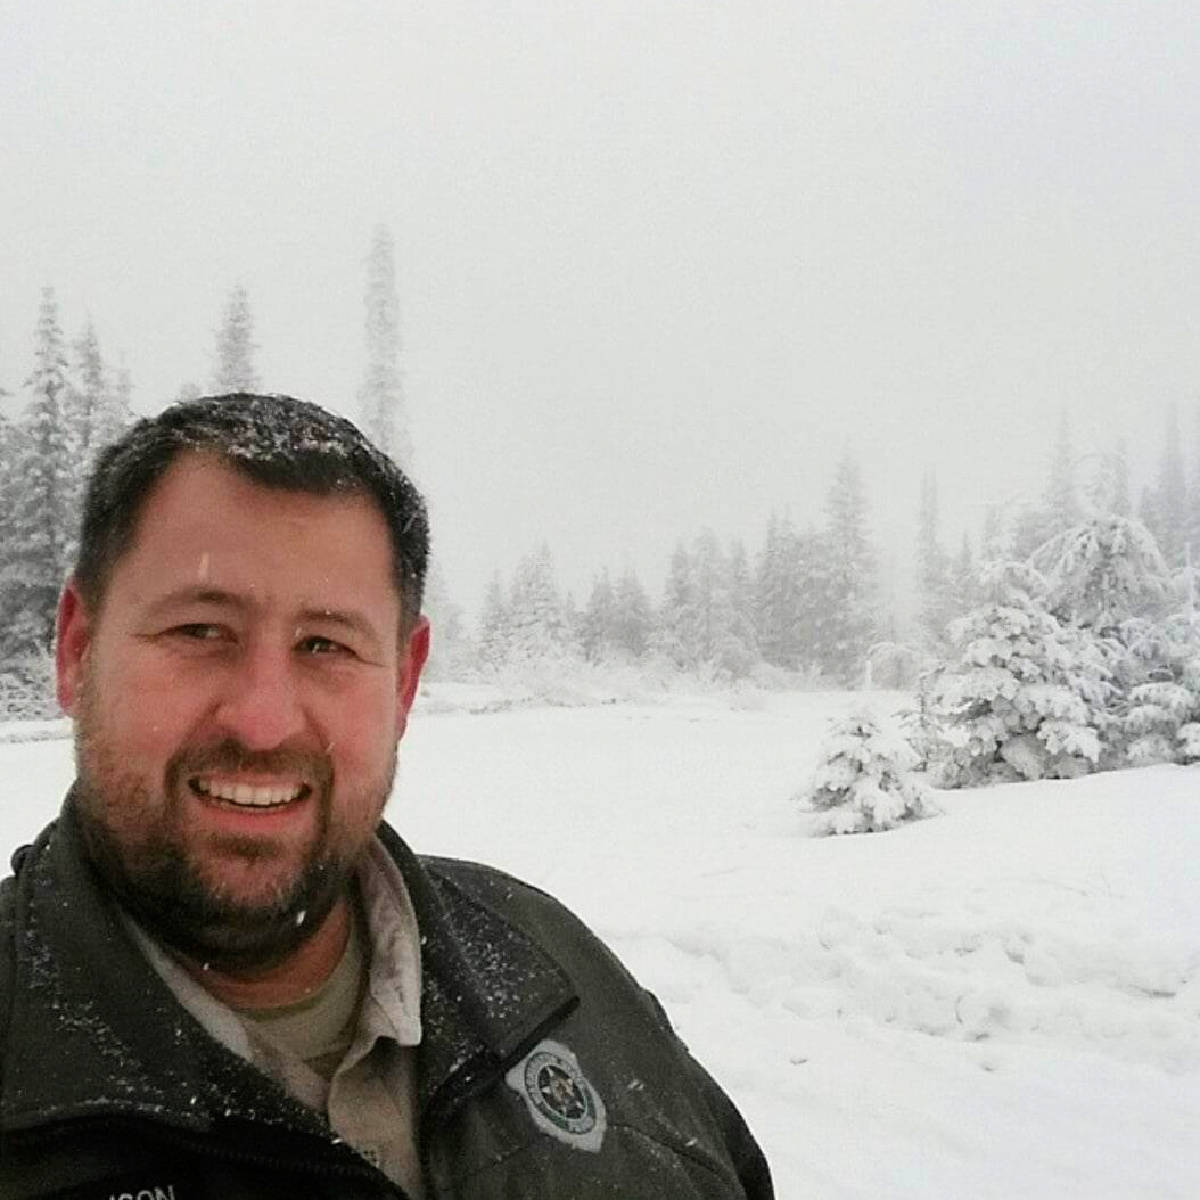 Park Ranger John in the snow during winter recreation season